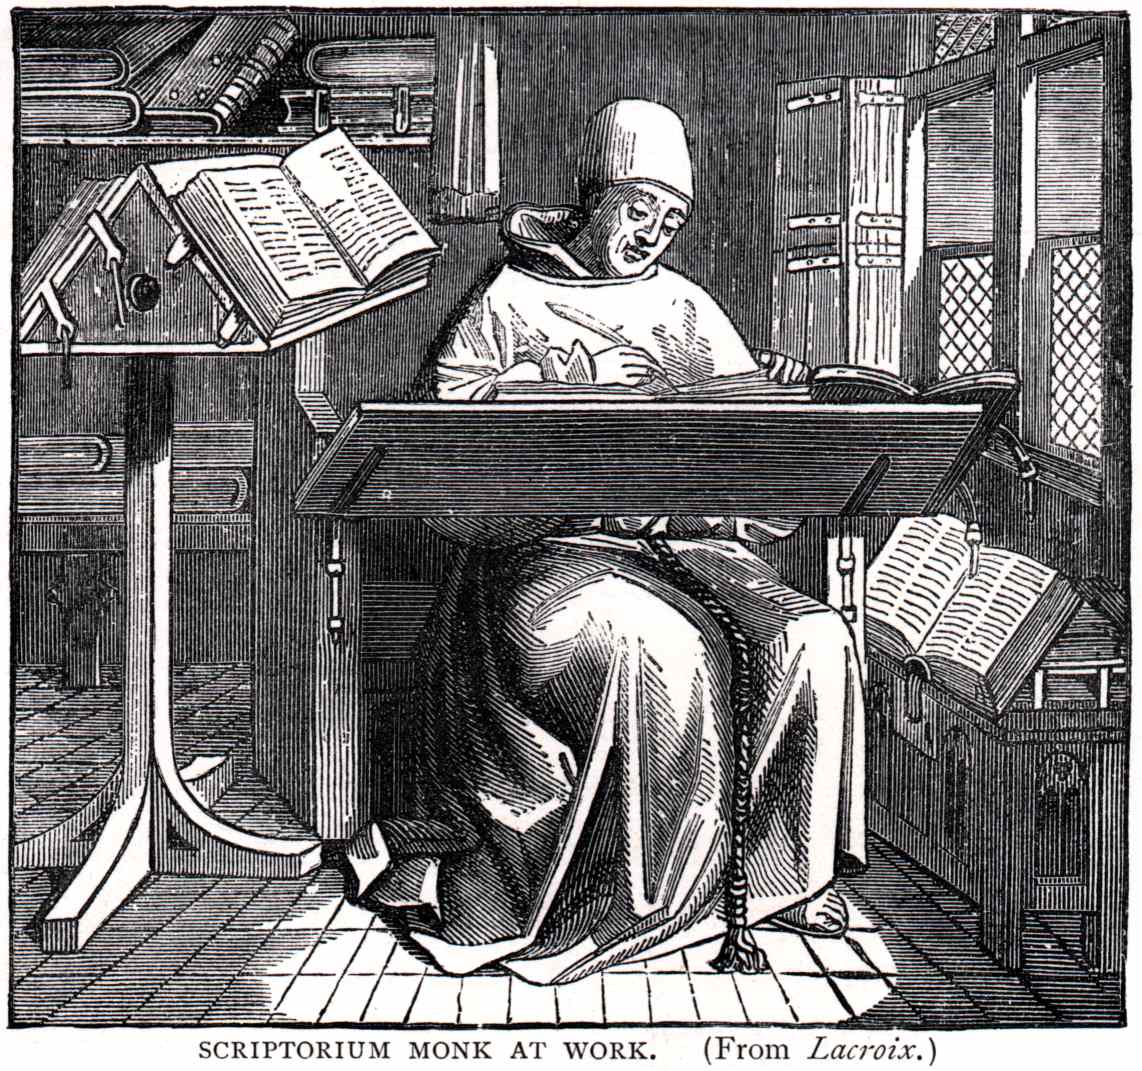 筆記する修道士。中世西ヨーロッパの共通語であるラテン語の読み書きは聖職者の専売特許と言っても差し支えない能力であり、彼らは自らの学問研究について情報を交換するため他の修道院や大学の聖職者と書簡をやり取りした。西欧における学問伝播は、聖職者らの往復書簡によってもたらされた。 